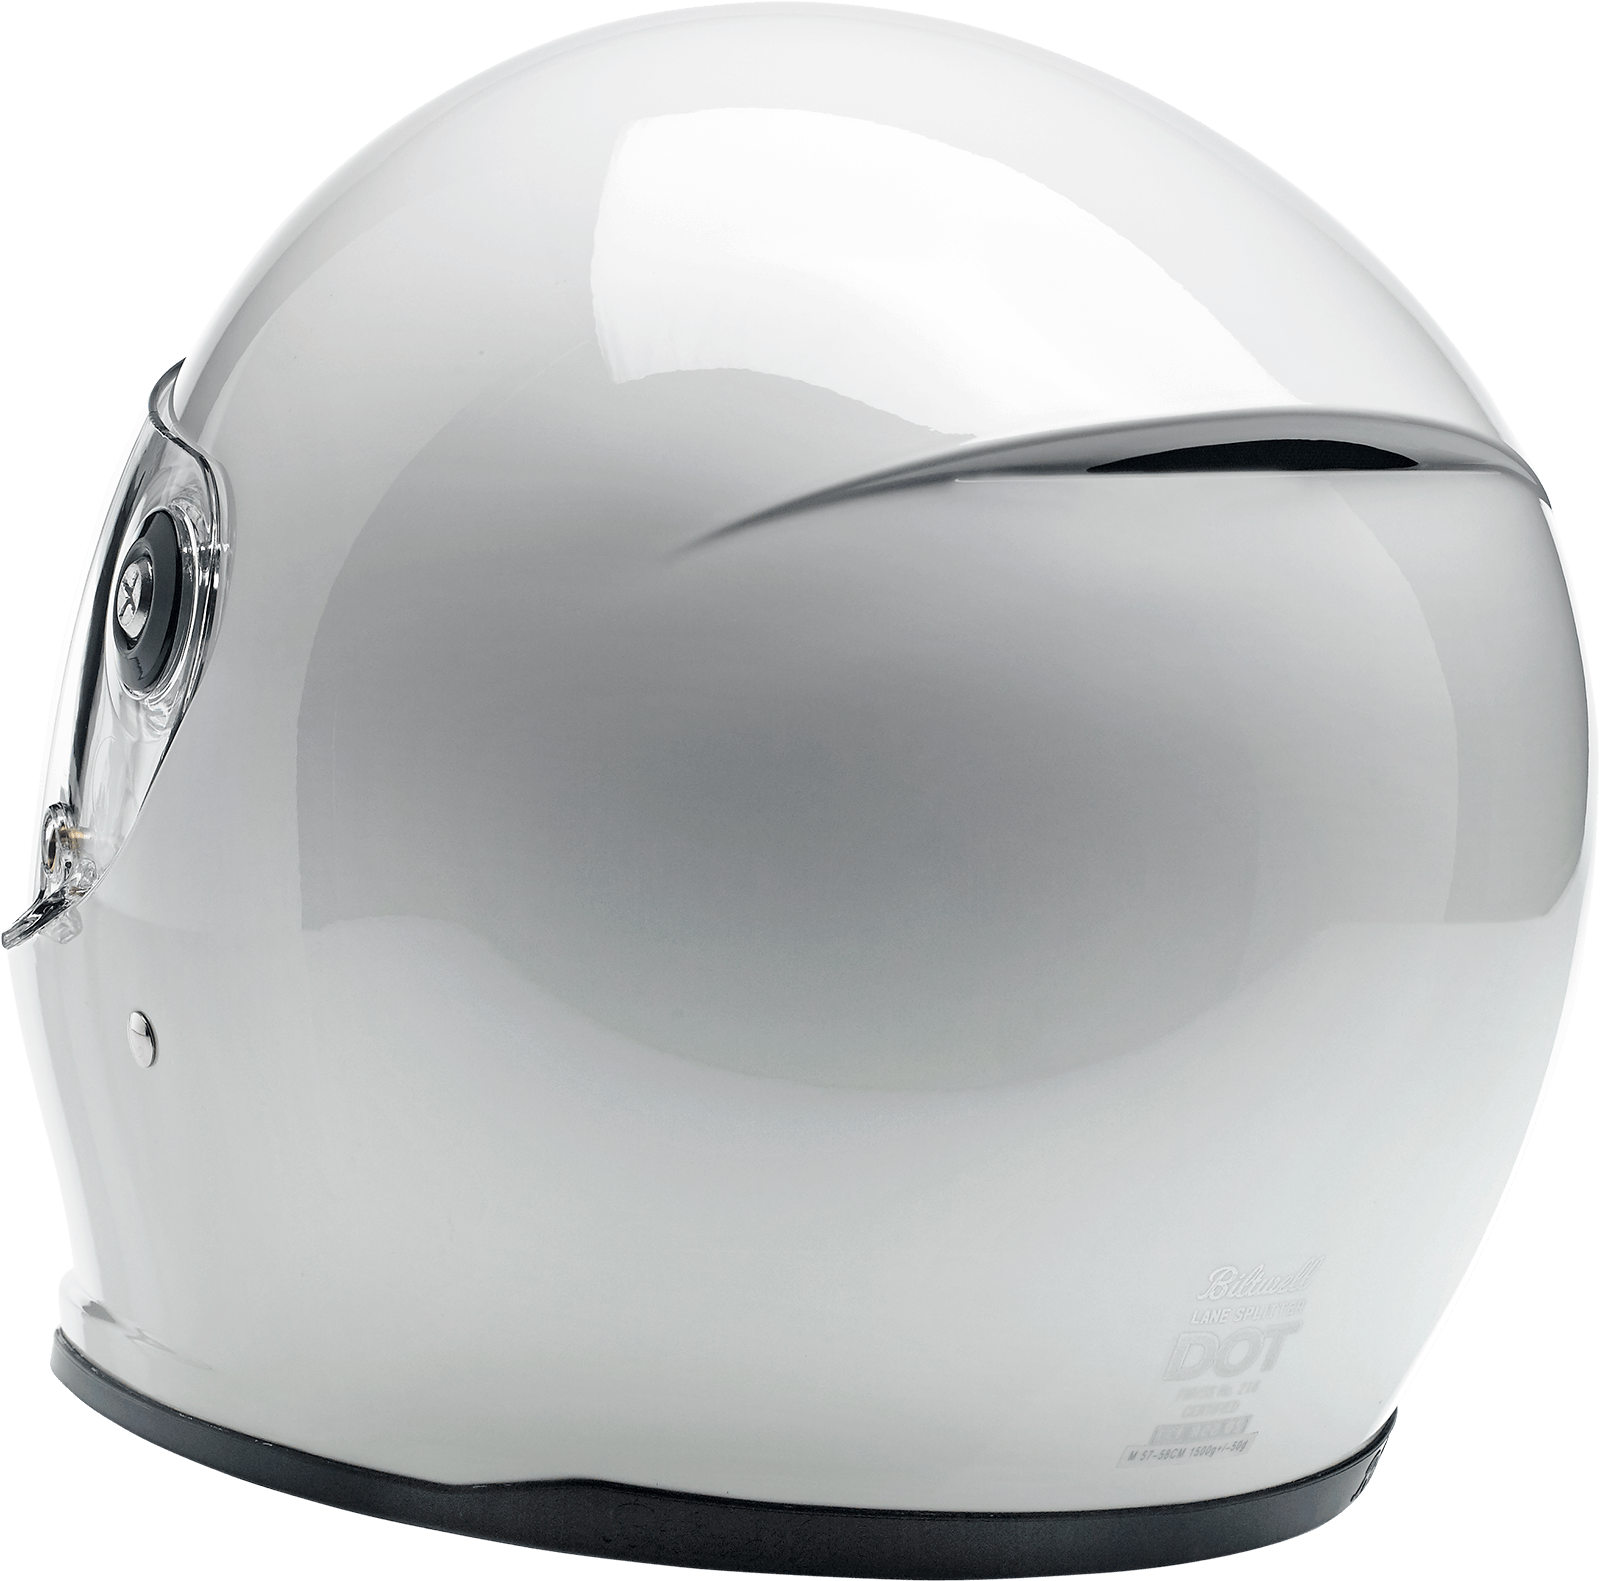 BILTWELL-Lane Splitter Helmets / Gloss White-Helmet-MetalCore Harley Supply